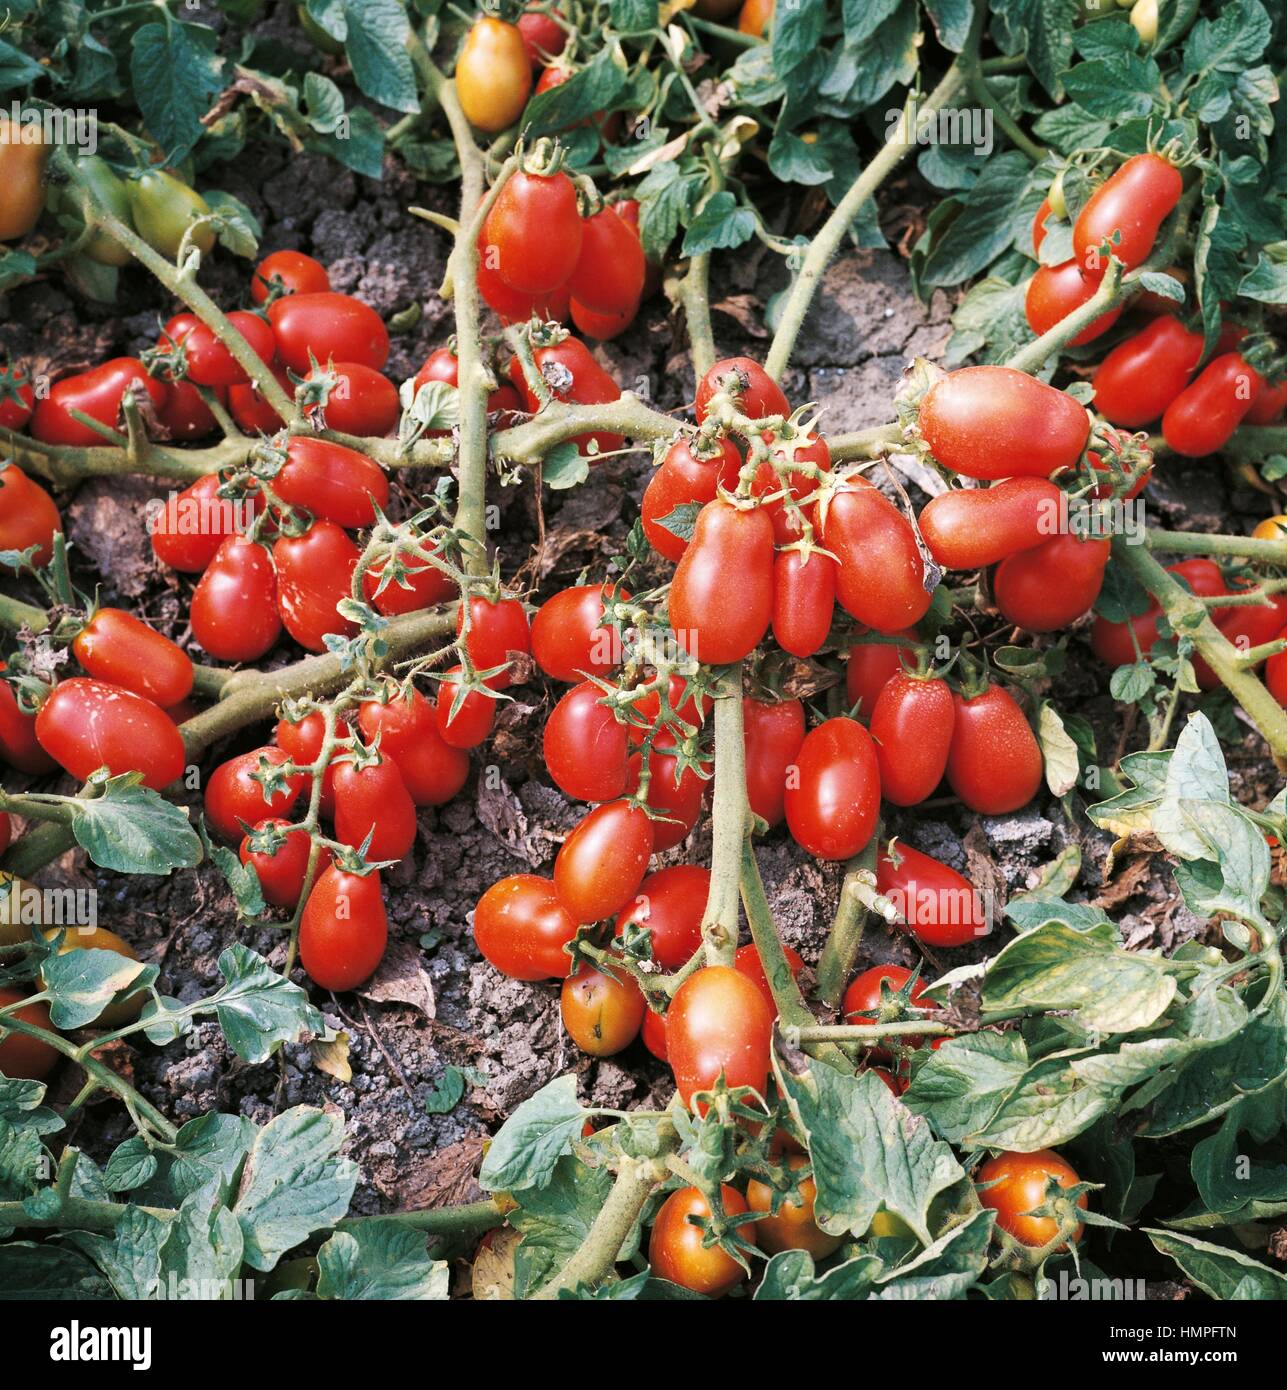 Tomatoes (Solanum lycopersicum or Lycopersicon esculentum), Solanaceae. Stock Photo